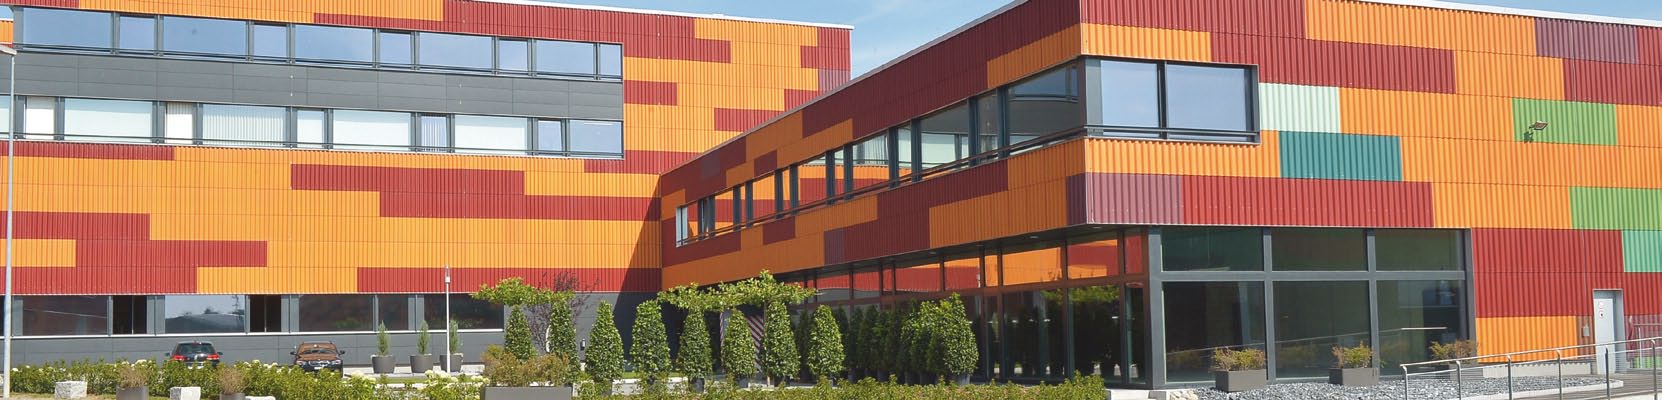 Wir bringen Sie weiter Fachkurse mit swisspor Im neuen Ausbildungszentrum in Boswil AG Im neuen Ausbildungszentrum swisspor AG in Boswil* bietet die swisspor praxisnahe, nachhaltige Ausbildungen in